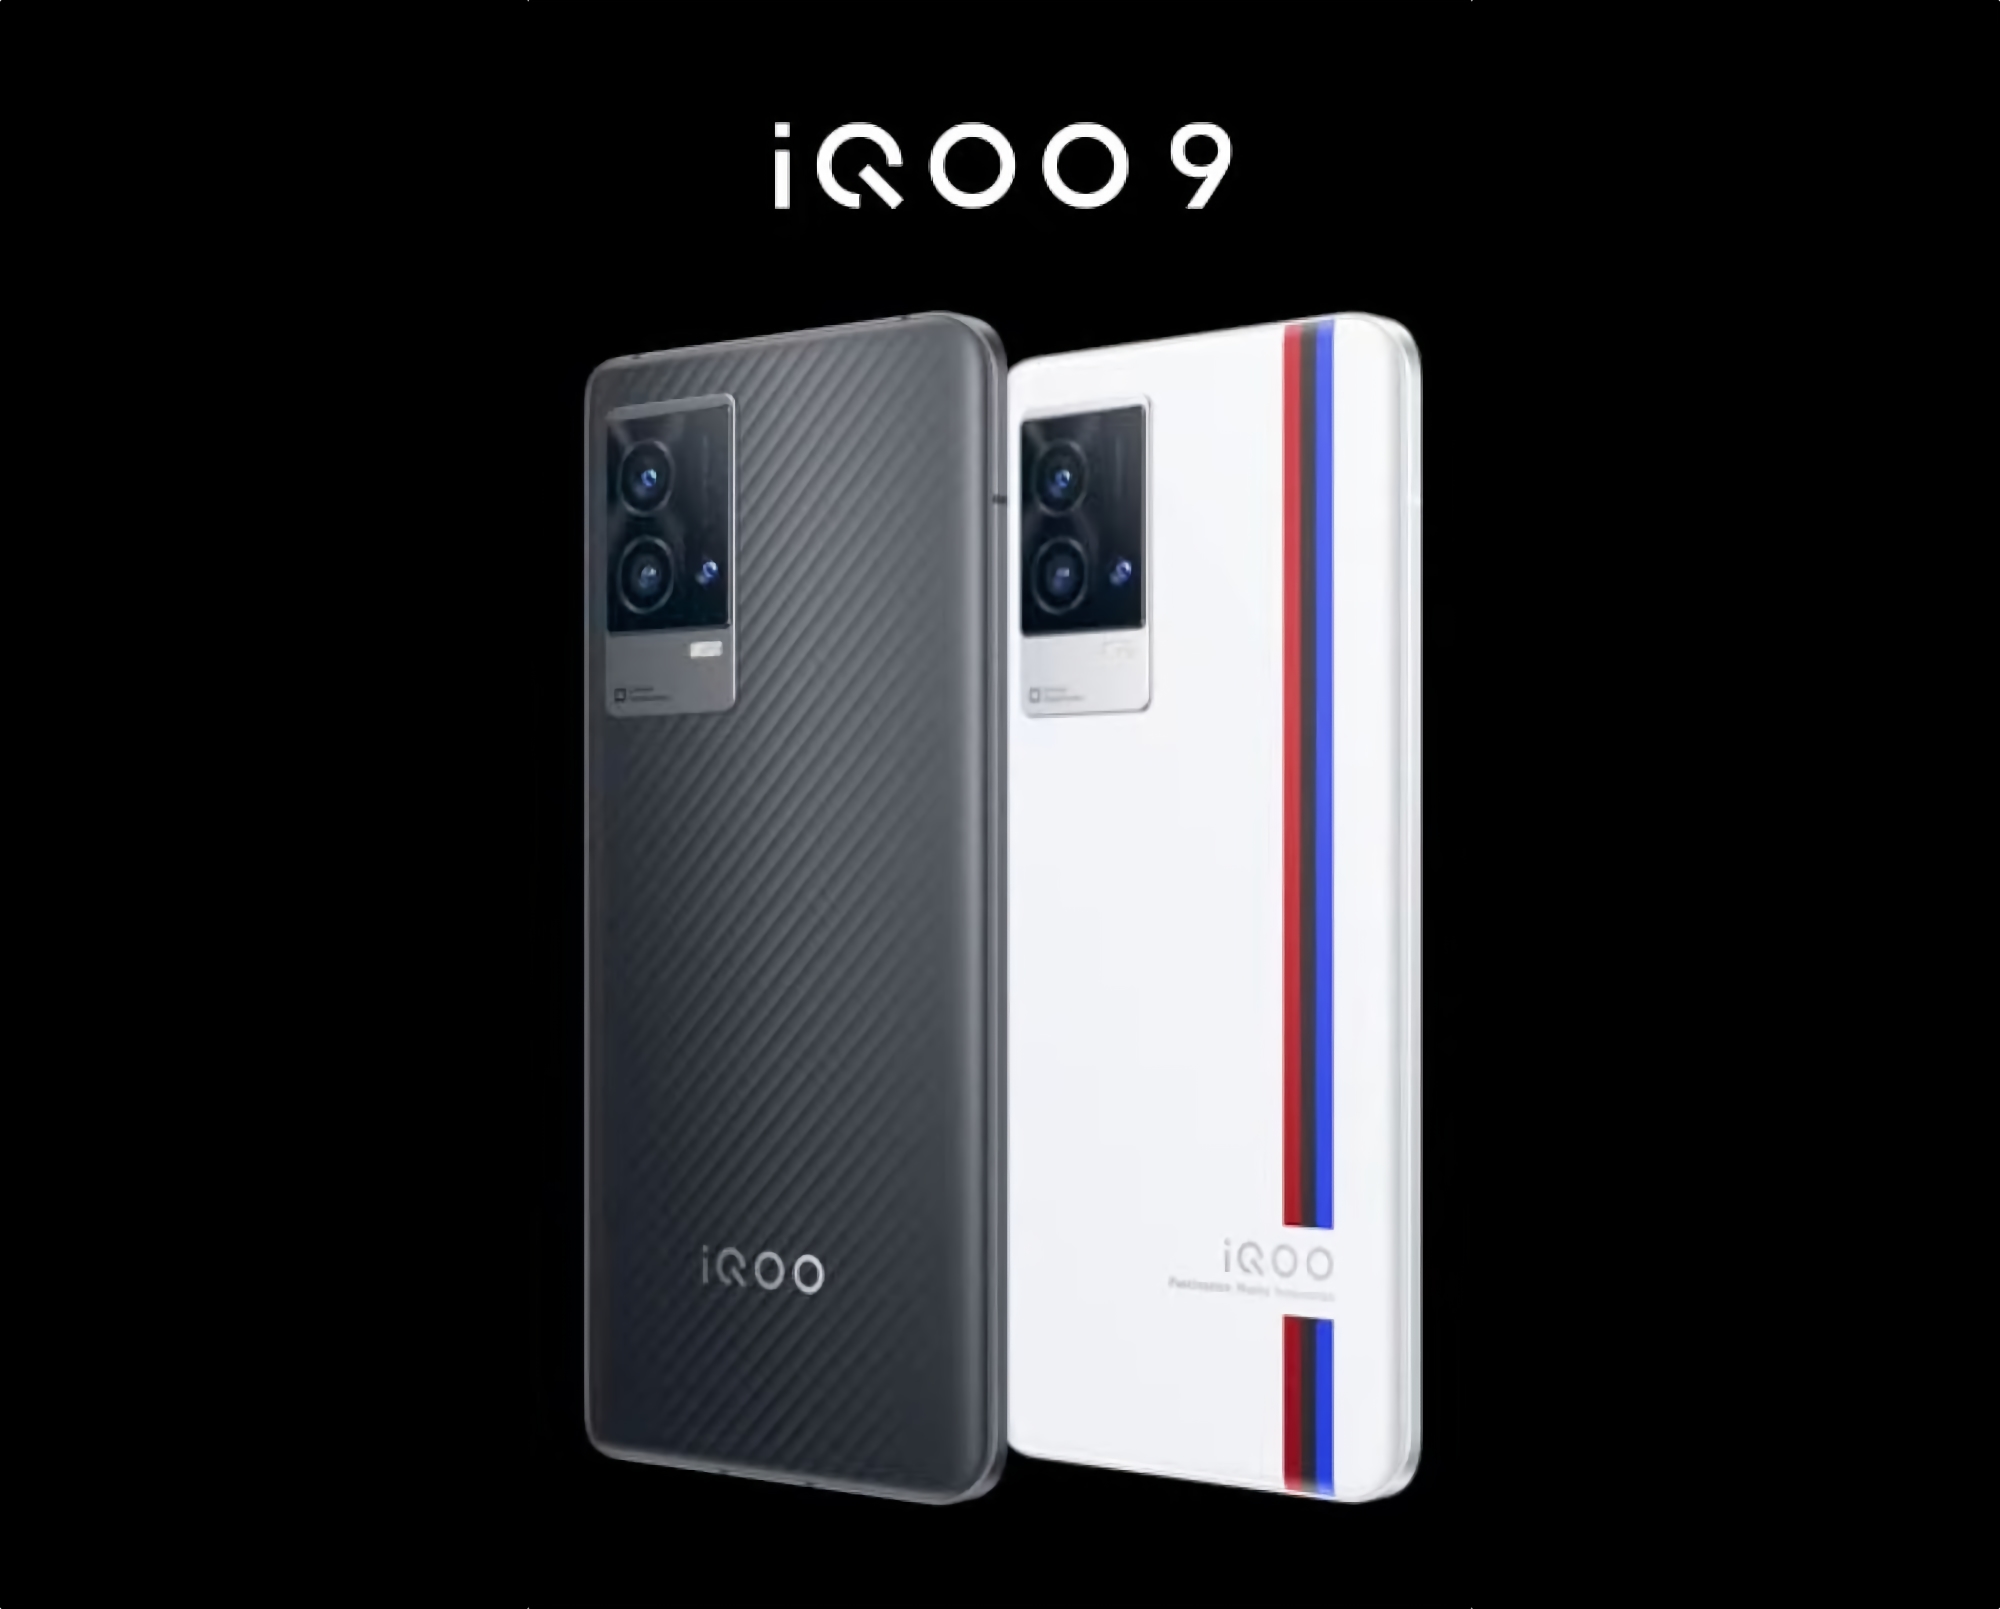 iQOO 9 z chipem Snapdragon 888+, potrójnym aparatem i ładowaniem 120 W wprowadzonym poza Chiny